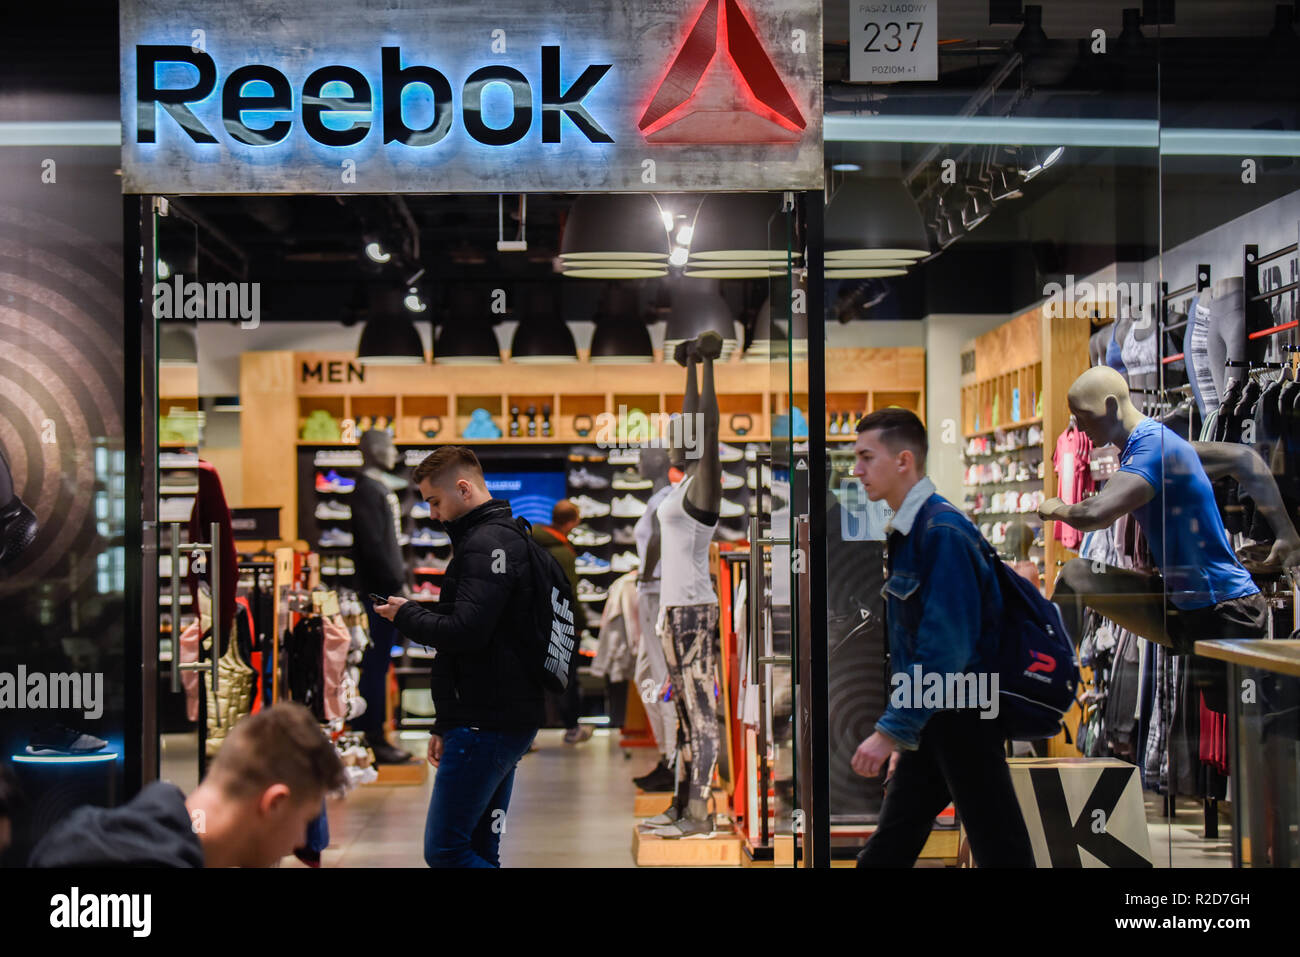 reebok shop online